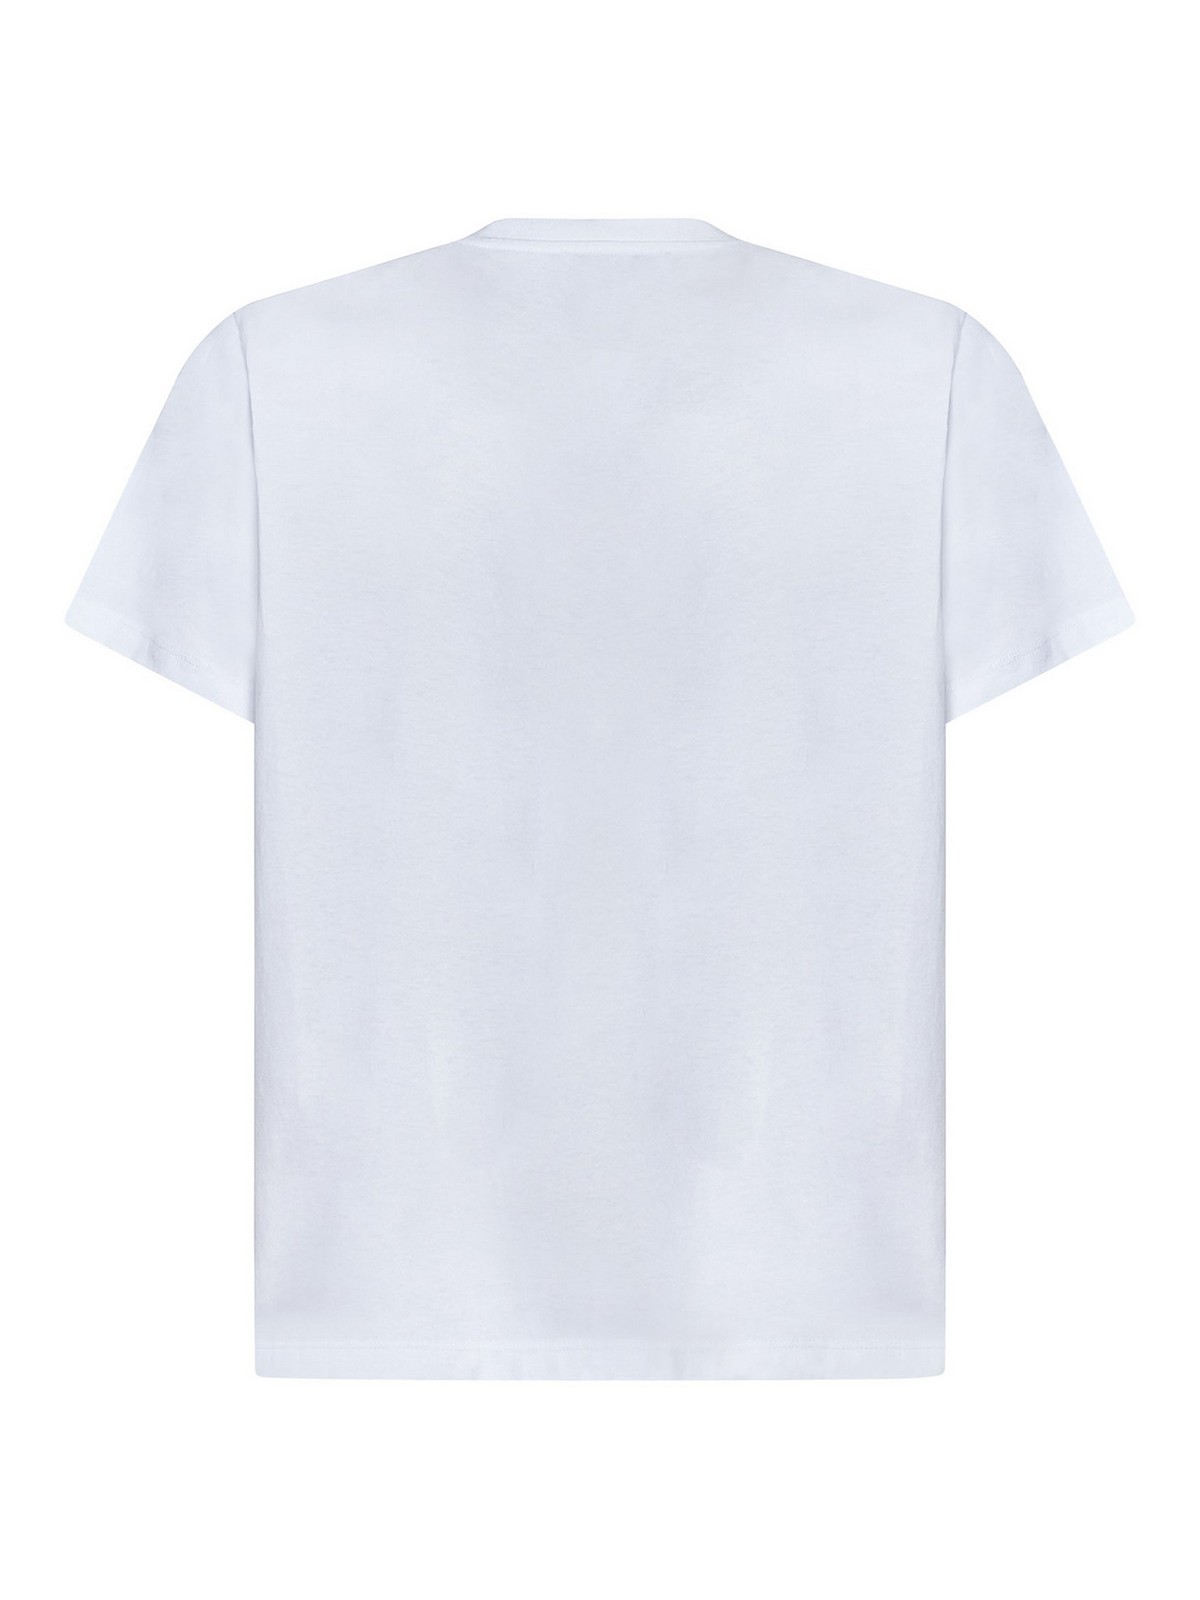 Shop Coperni Camiseta - Blanco In White